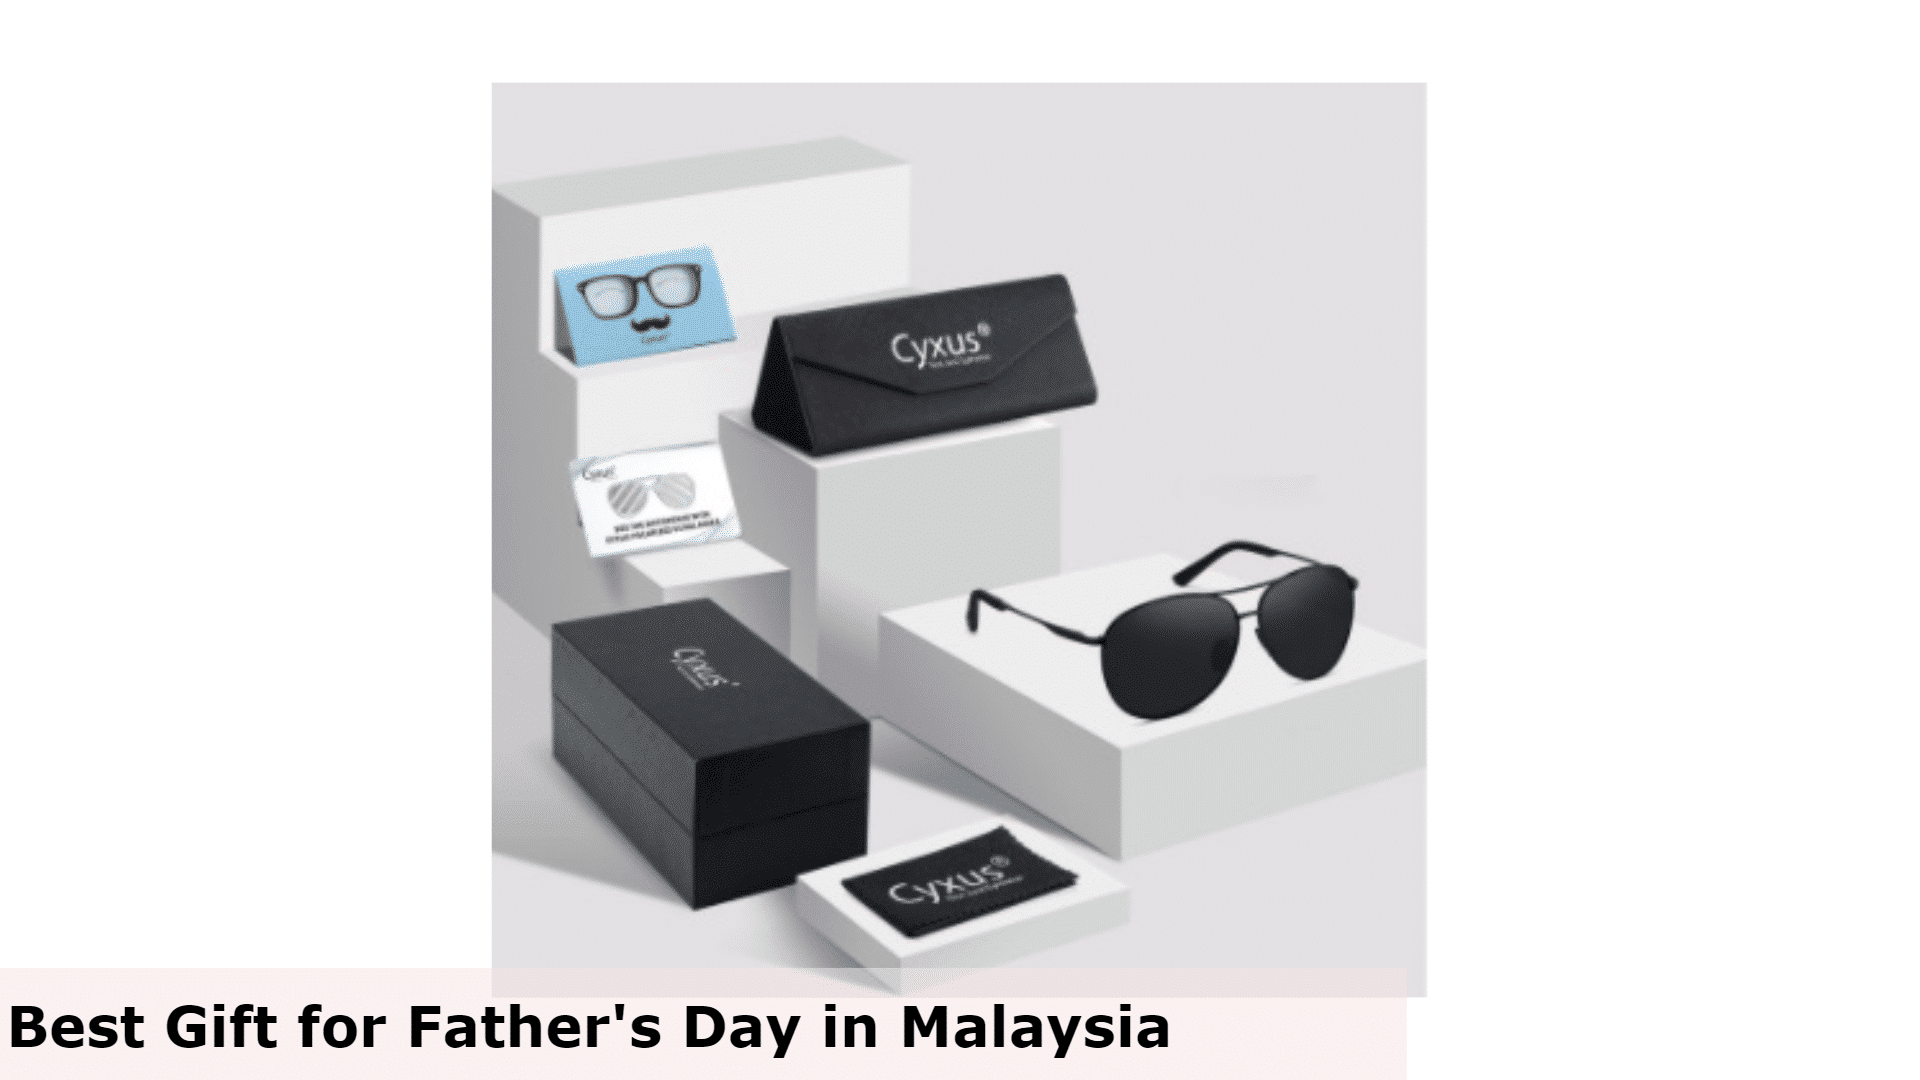 Cermin mata hitam - Hadiah Terbaik untuk Hari Bapa di Malaysia, Hadiah Terbaik untuk Hari Bapa Malaysia, Hadiah Hari Bapa Terbaik untuk Ayah, Apa yang ayah mahukan untuk Hari Bapa di Malaysia?, Hadiah murah yang bagus untuk apa Hari Bapa di Malaysia?, Adakah anda memberi hadiah pada Hari Bapa di Malaysia?, hadiah untuk ayah yang tidak mahu apa-apa, idea hadiah hari bapa yang ringkas, idea hadiah hari bapa 2022, idea hadiah hari bapa semasa covid, idea hadiah hari bapa daripada anak perempuan, hadiah unik untuk ayah, idea hadiah hari bapa daripada isteri, hadiah hari bapa daripada anak lelaki, Apa yang dibeli untuk ayah yang tidak mahu apa-apa?, Apa untuk mendapatkan ayah yang sukar dibeli?, Apa yang perlu saya dapatkan ayah saya yang membosankan untuk Krismas?, Hadiah apa yang ayah suka?,